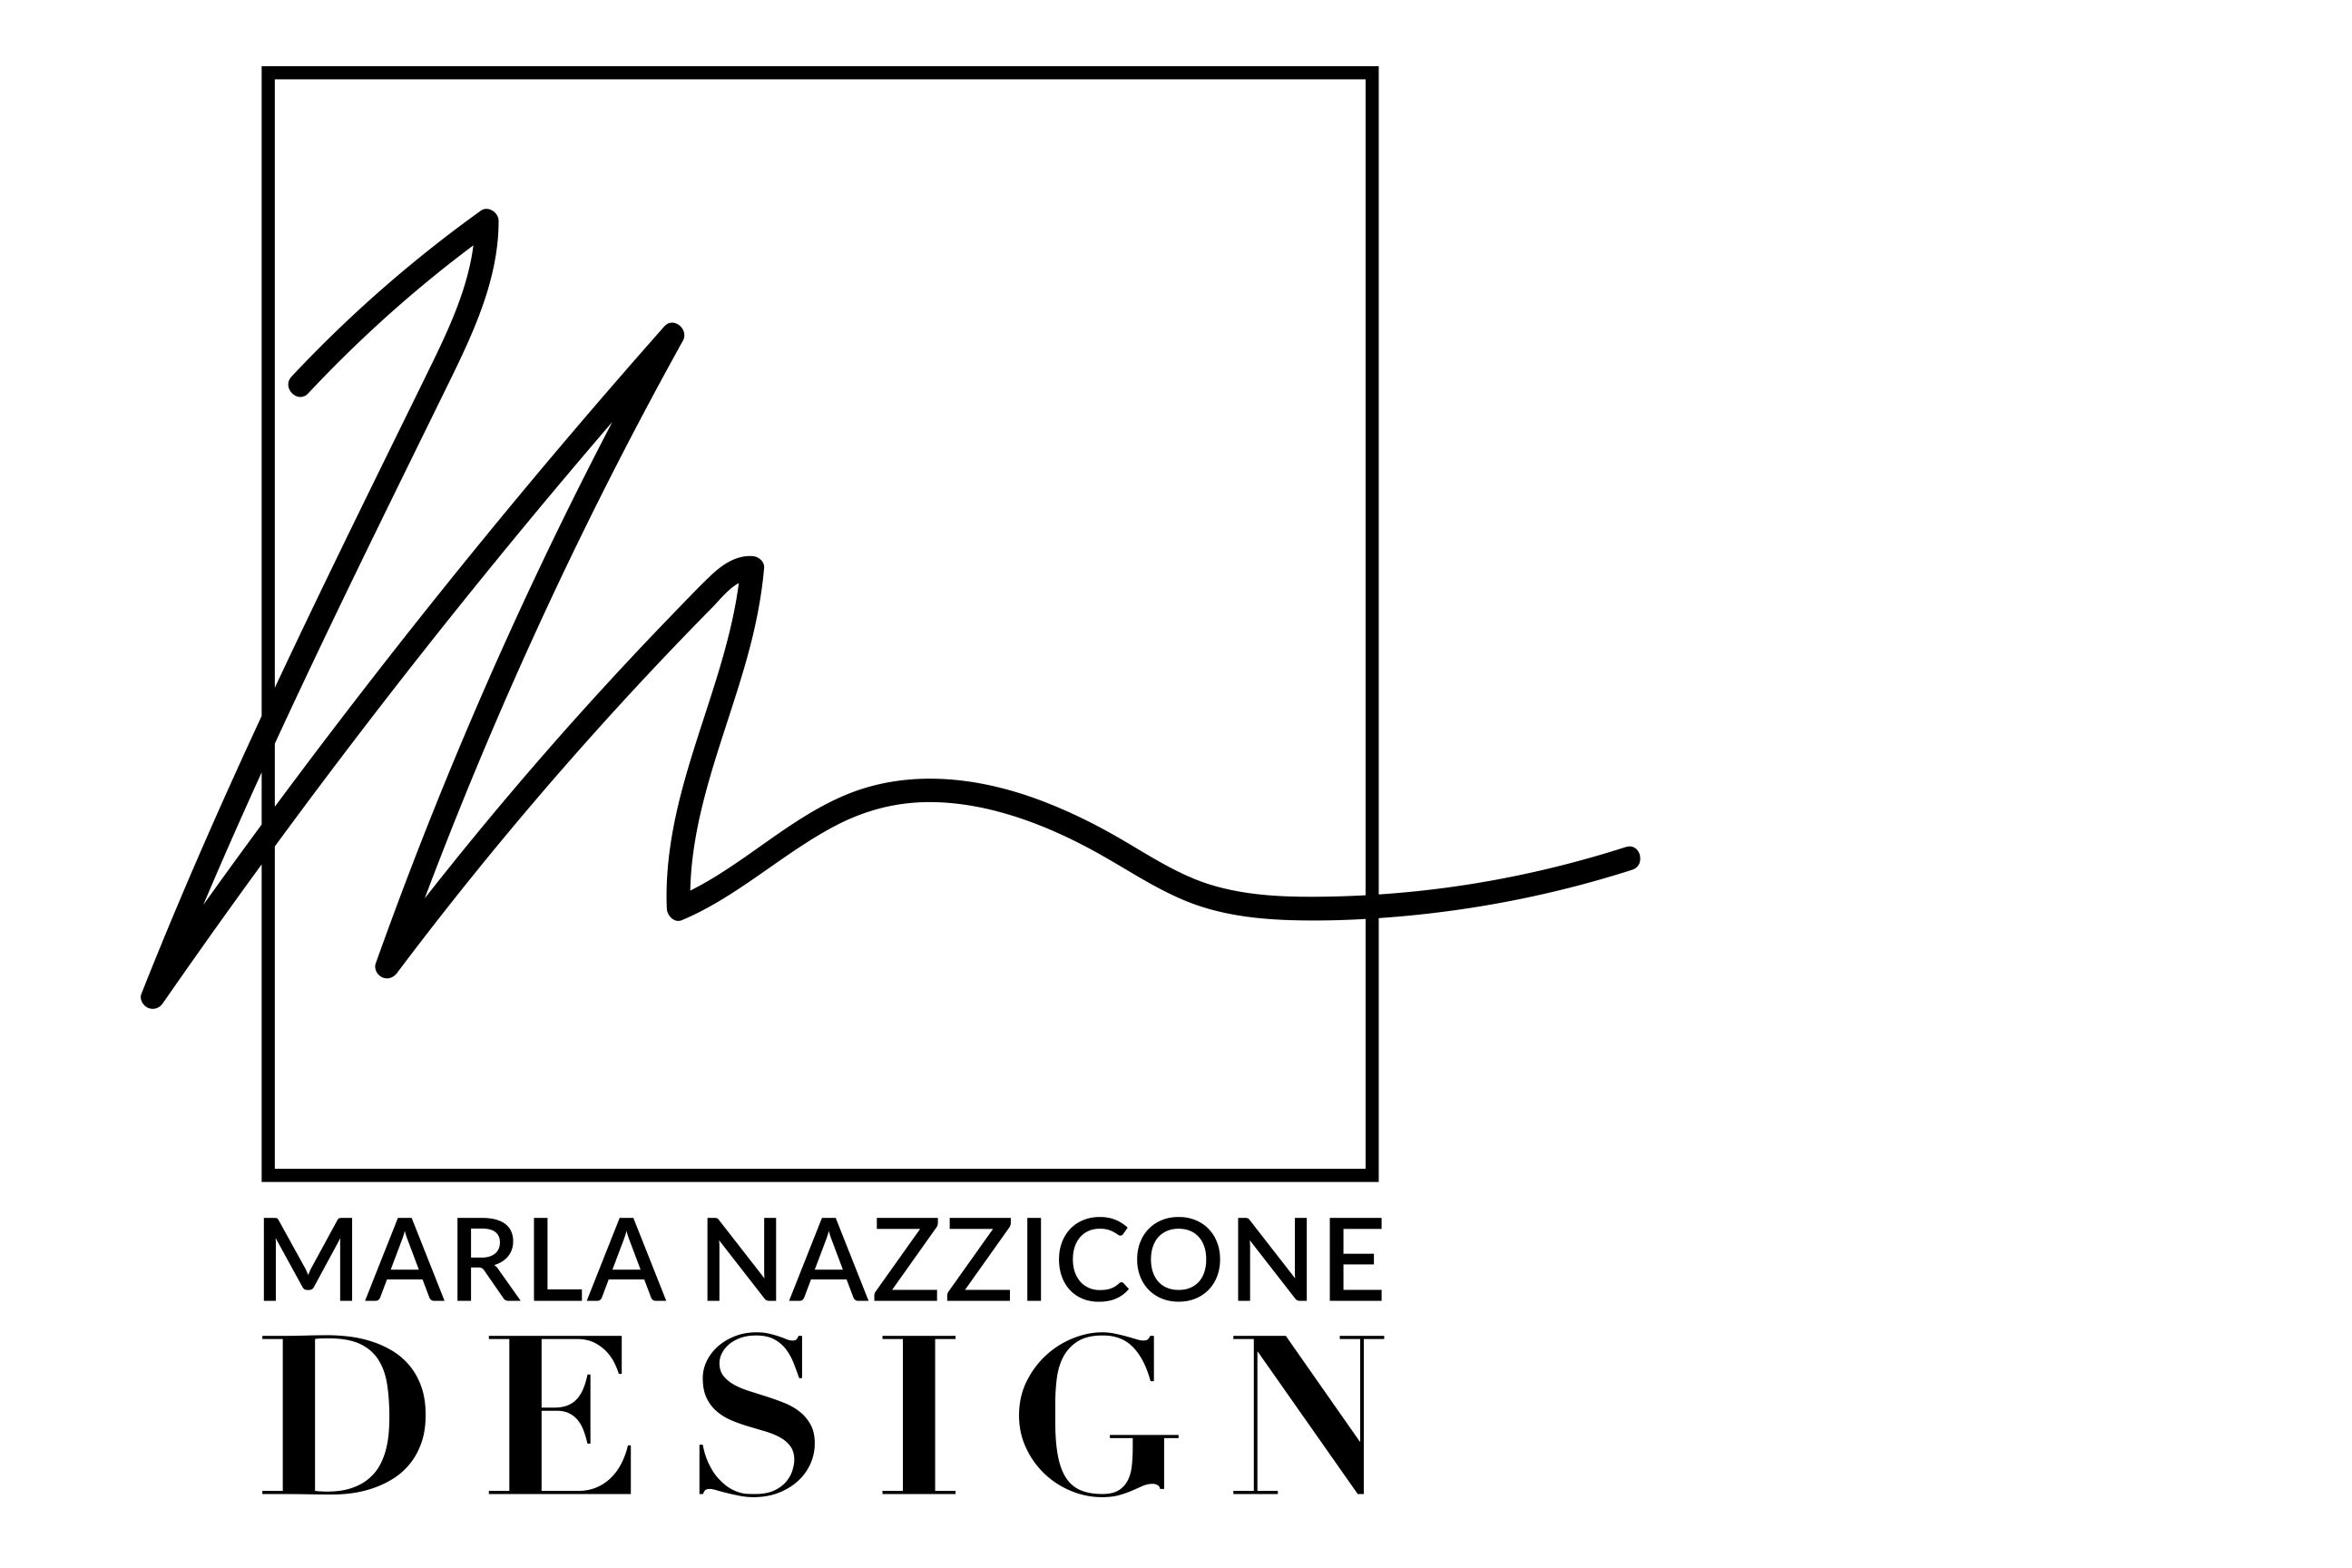 Marla Nazzicone Design Inc. logo